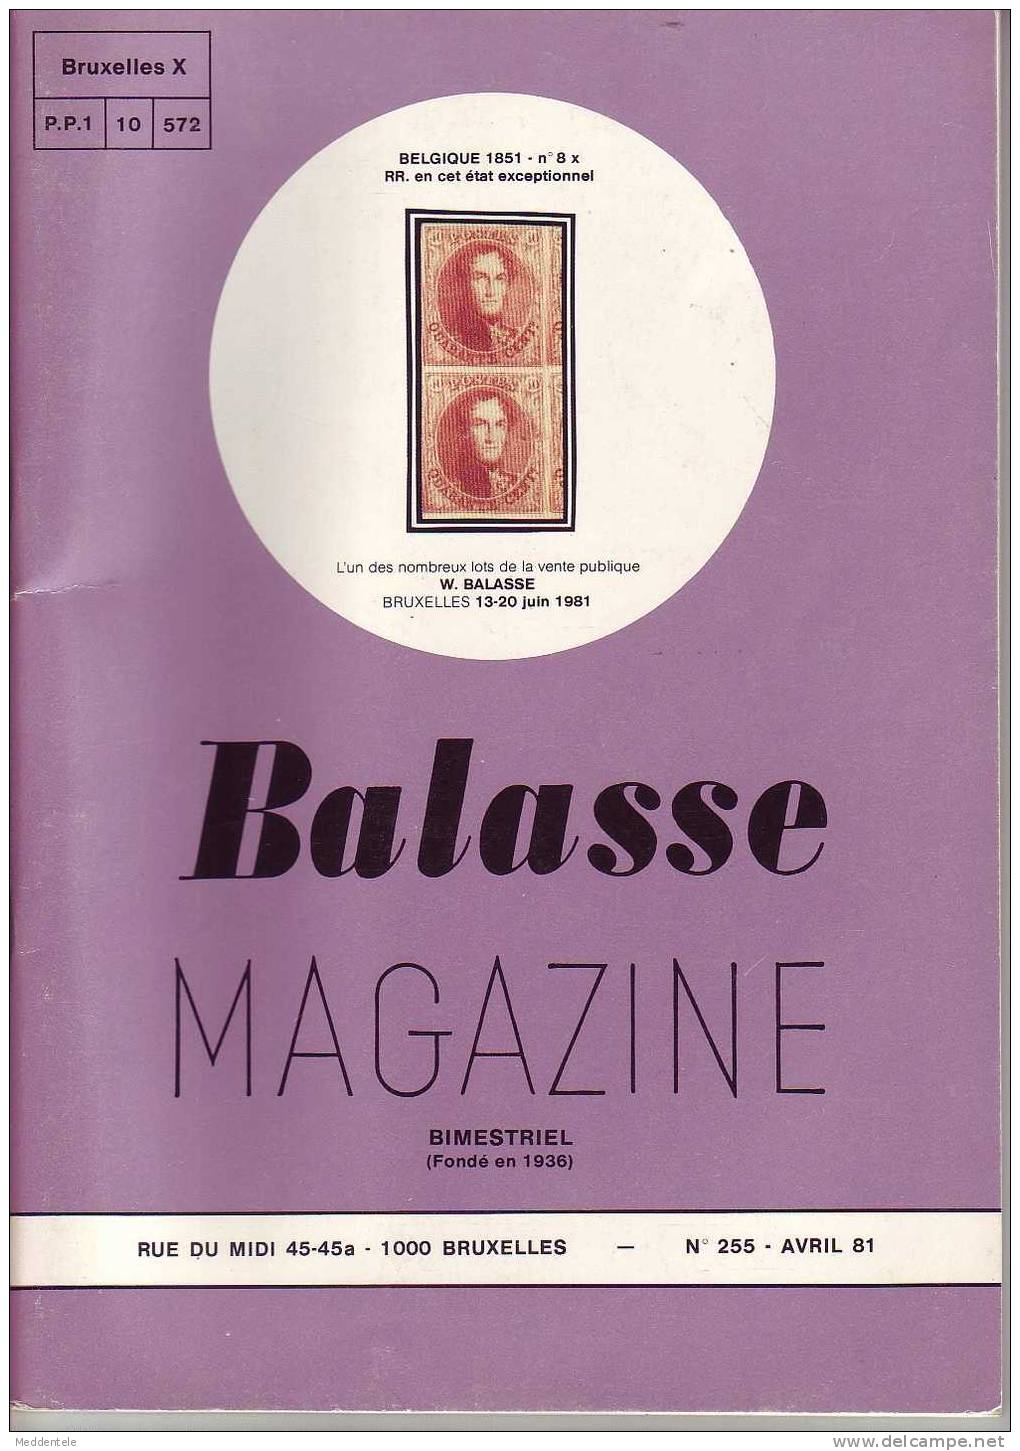 BALASSE MAGAZINE N° 255 - Français (àpd. 1941)